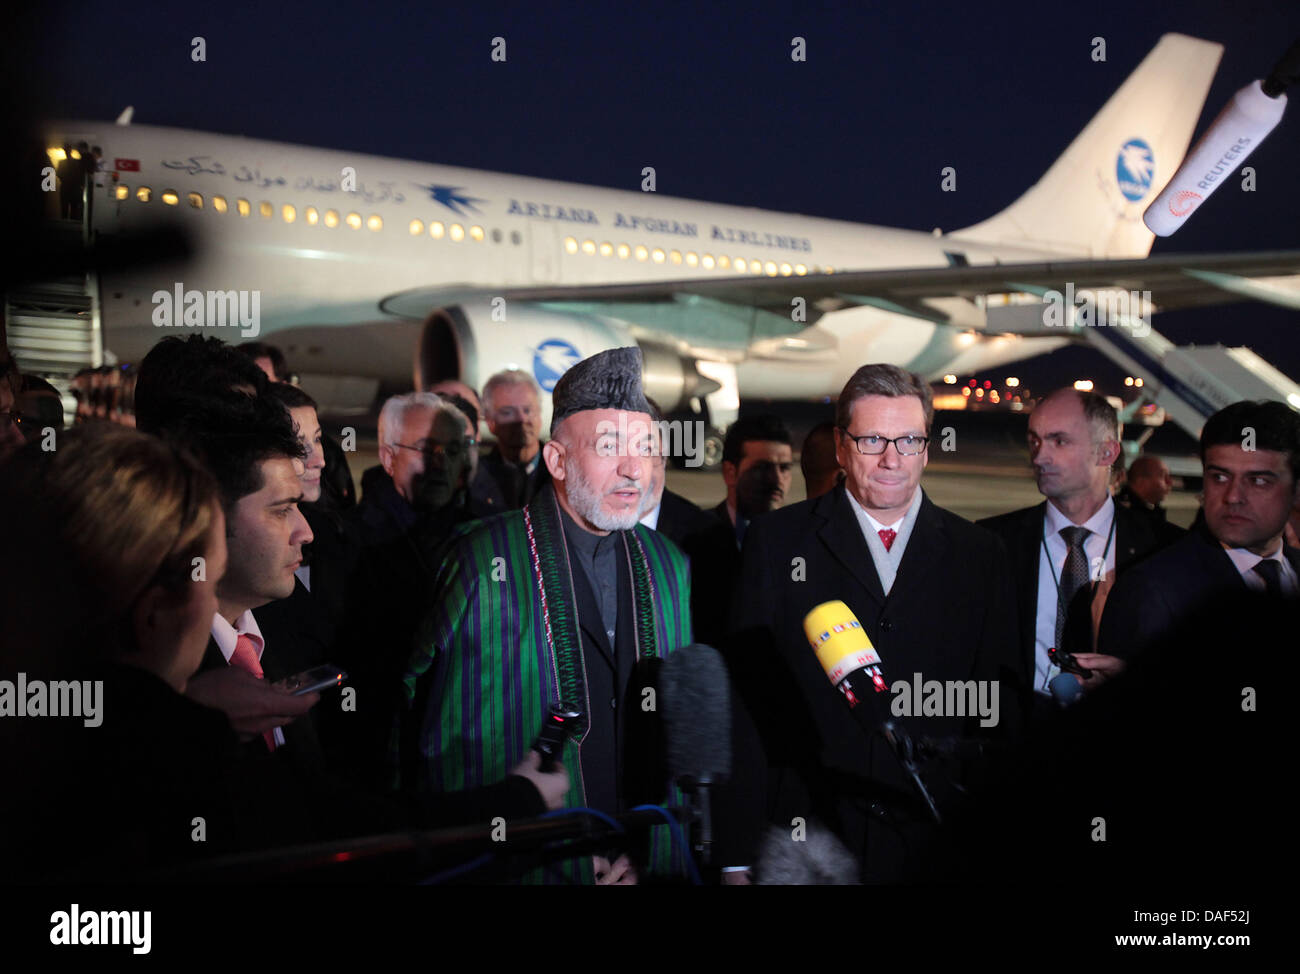 Afghanistans Präsident Hamid Karzai (C) gibt Interviews nach der Begrüßung durch Bundesaußenminister Guido Westerwelle (3-R) nach seiner Ankunft am Flughafen Köln-Bonn in Köln, 2. Dezember 2011. Hamid Karzai hat den Vorsitz der internationalen Afghanistan-Konferenz in Bonn am 5. Dezember 2011. Foto: OLIVER BERG Stockfoto